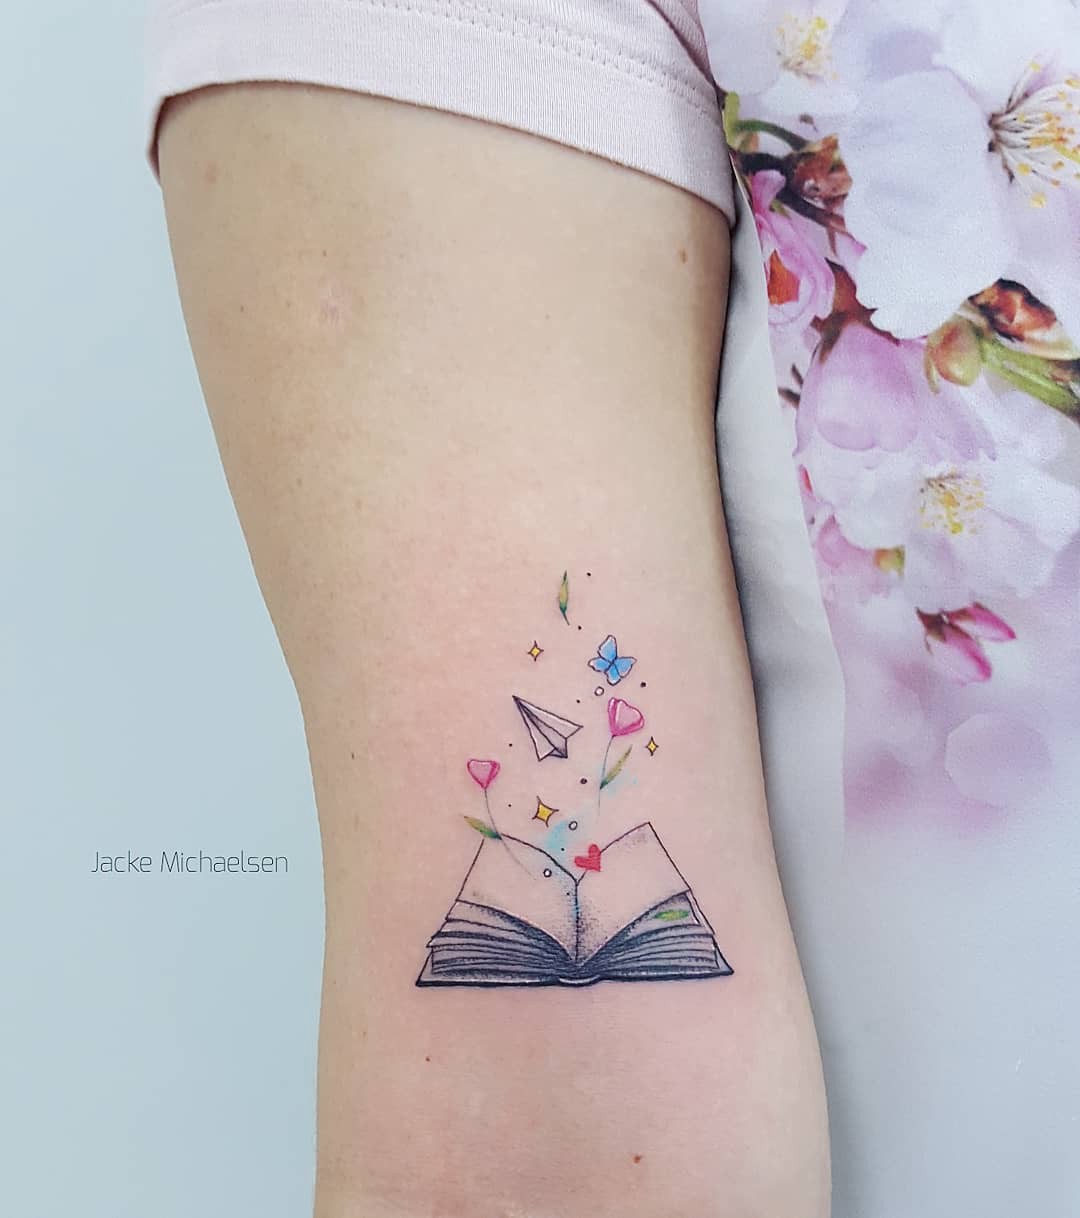 Tatuagem De Livros